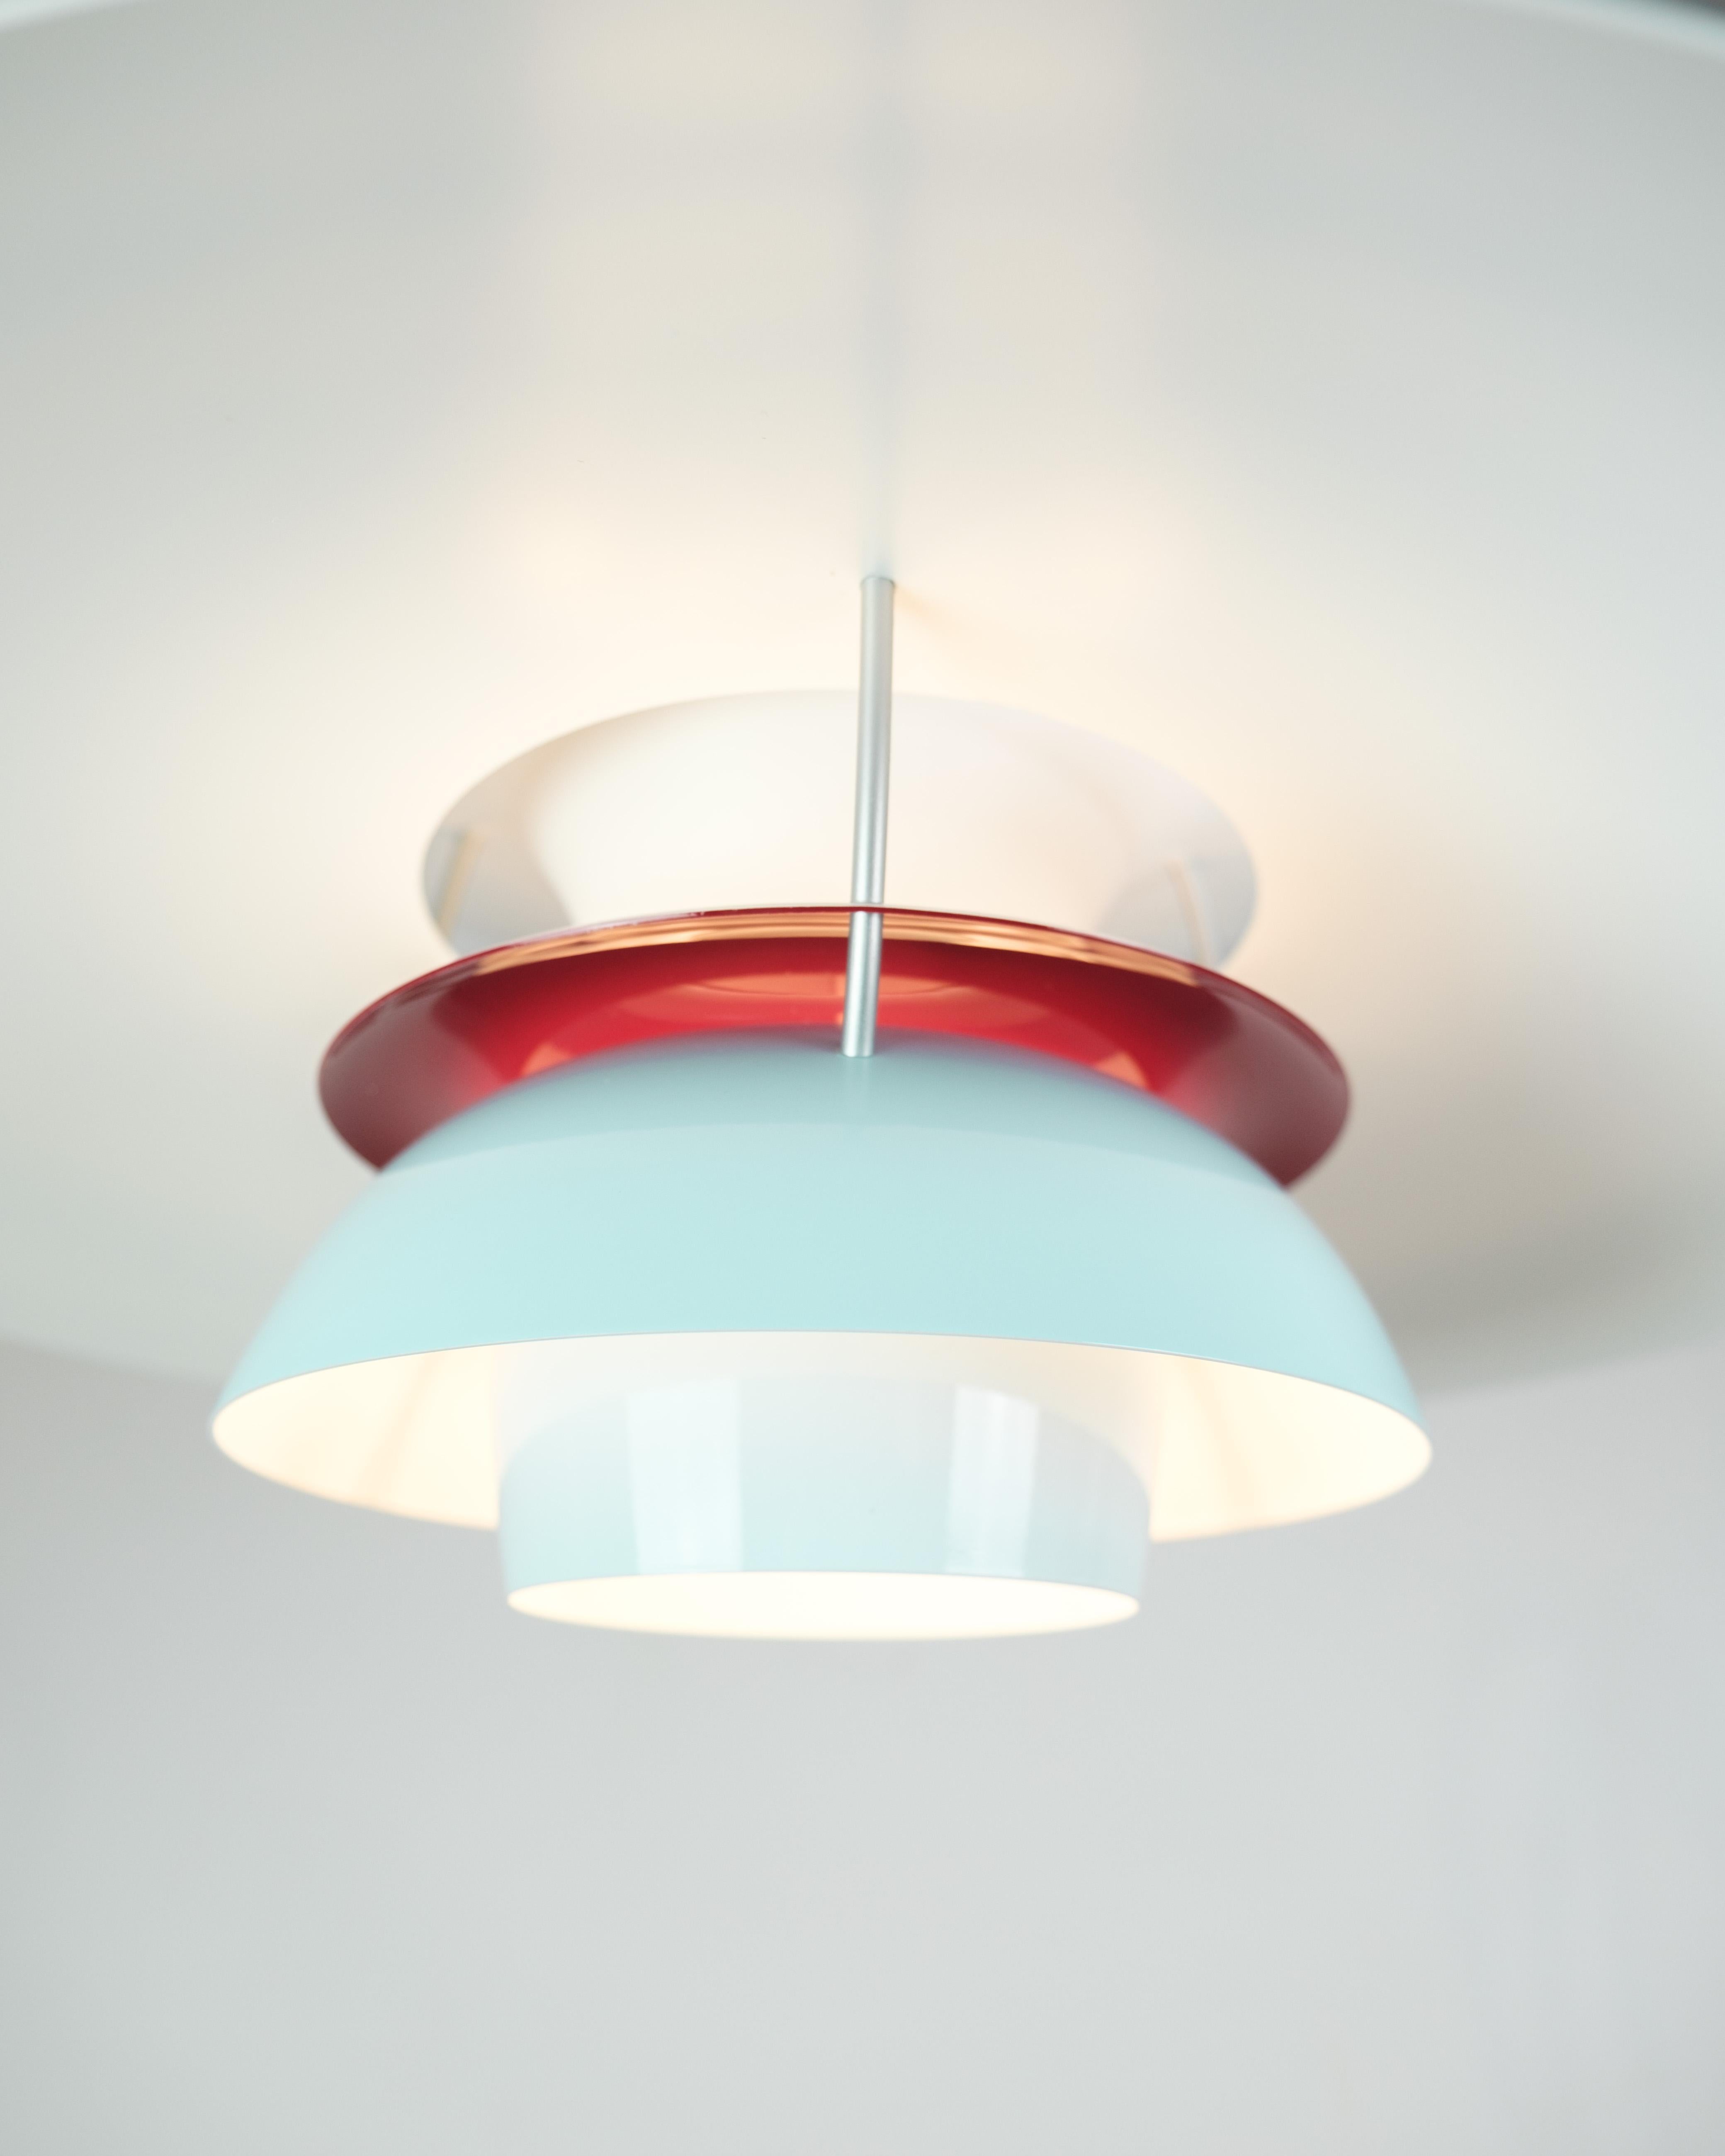 
La lampada da soffitto PH5, disegnata da Poul Henningsen e prodotta da Louis Poulsen, è un pezzo iconico del design dell'illuminazione noto per la sua forma innovativa e la sua eccezionale funzionalità. In questa edizione speciale, la lampada è